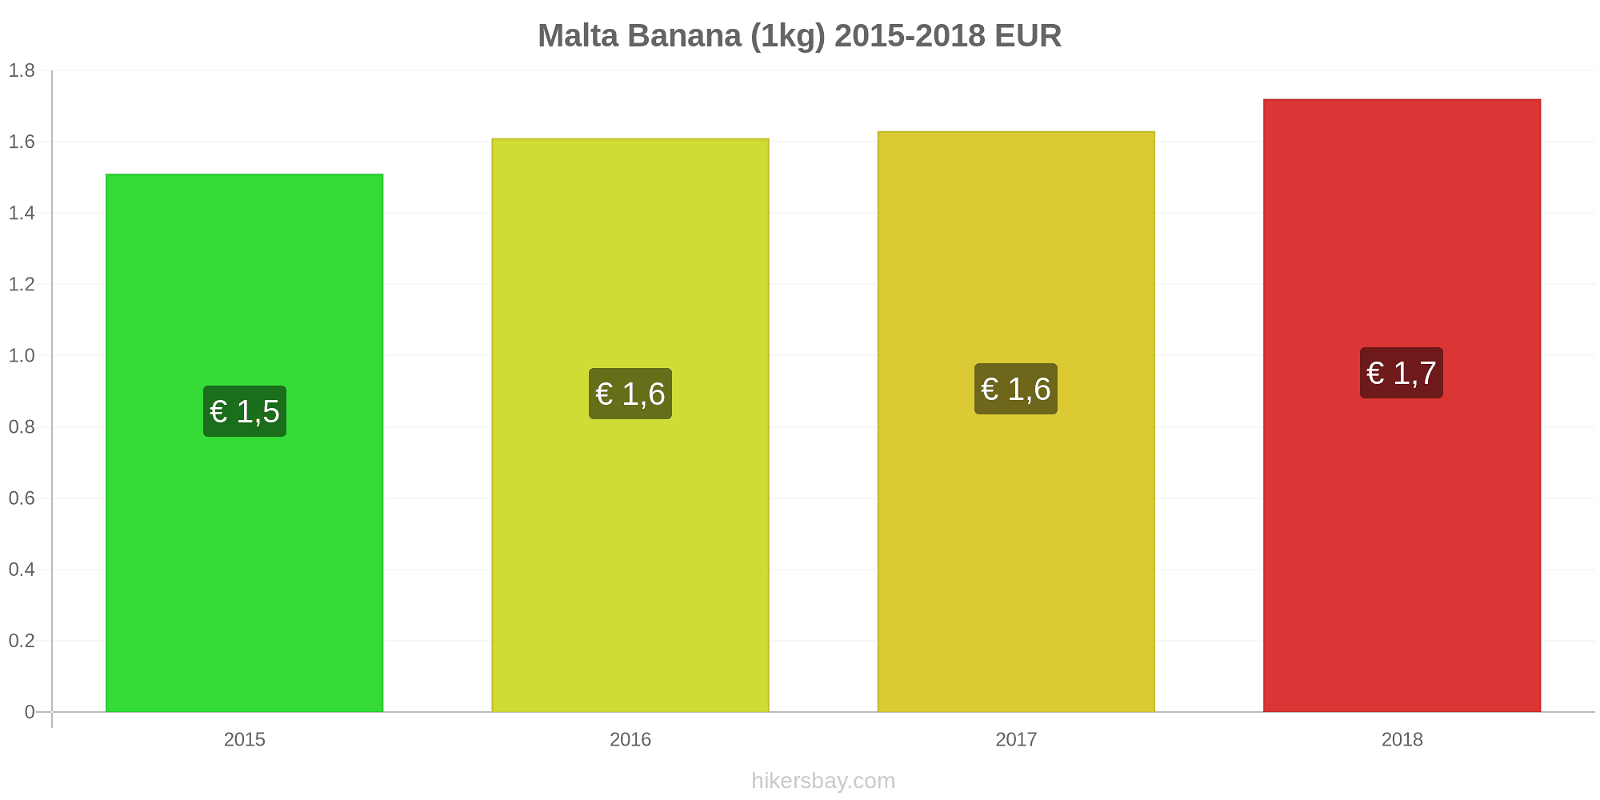 Malta mudanças de preços Bananas (1kg) hikersbay.com